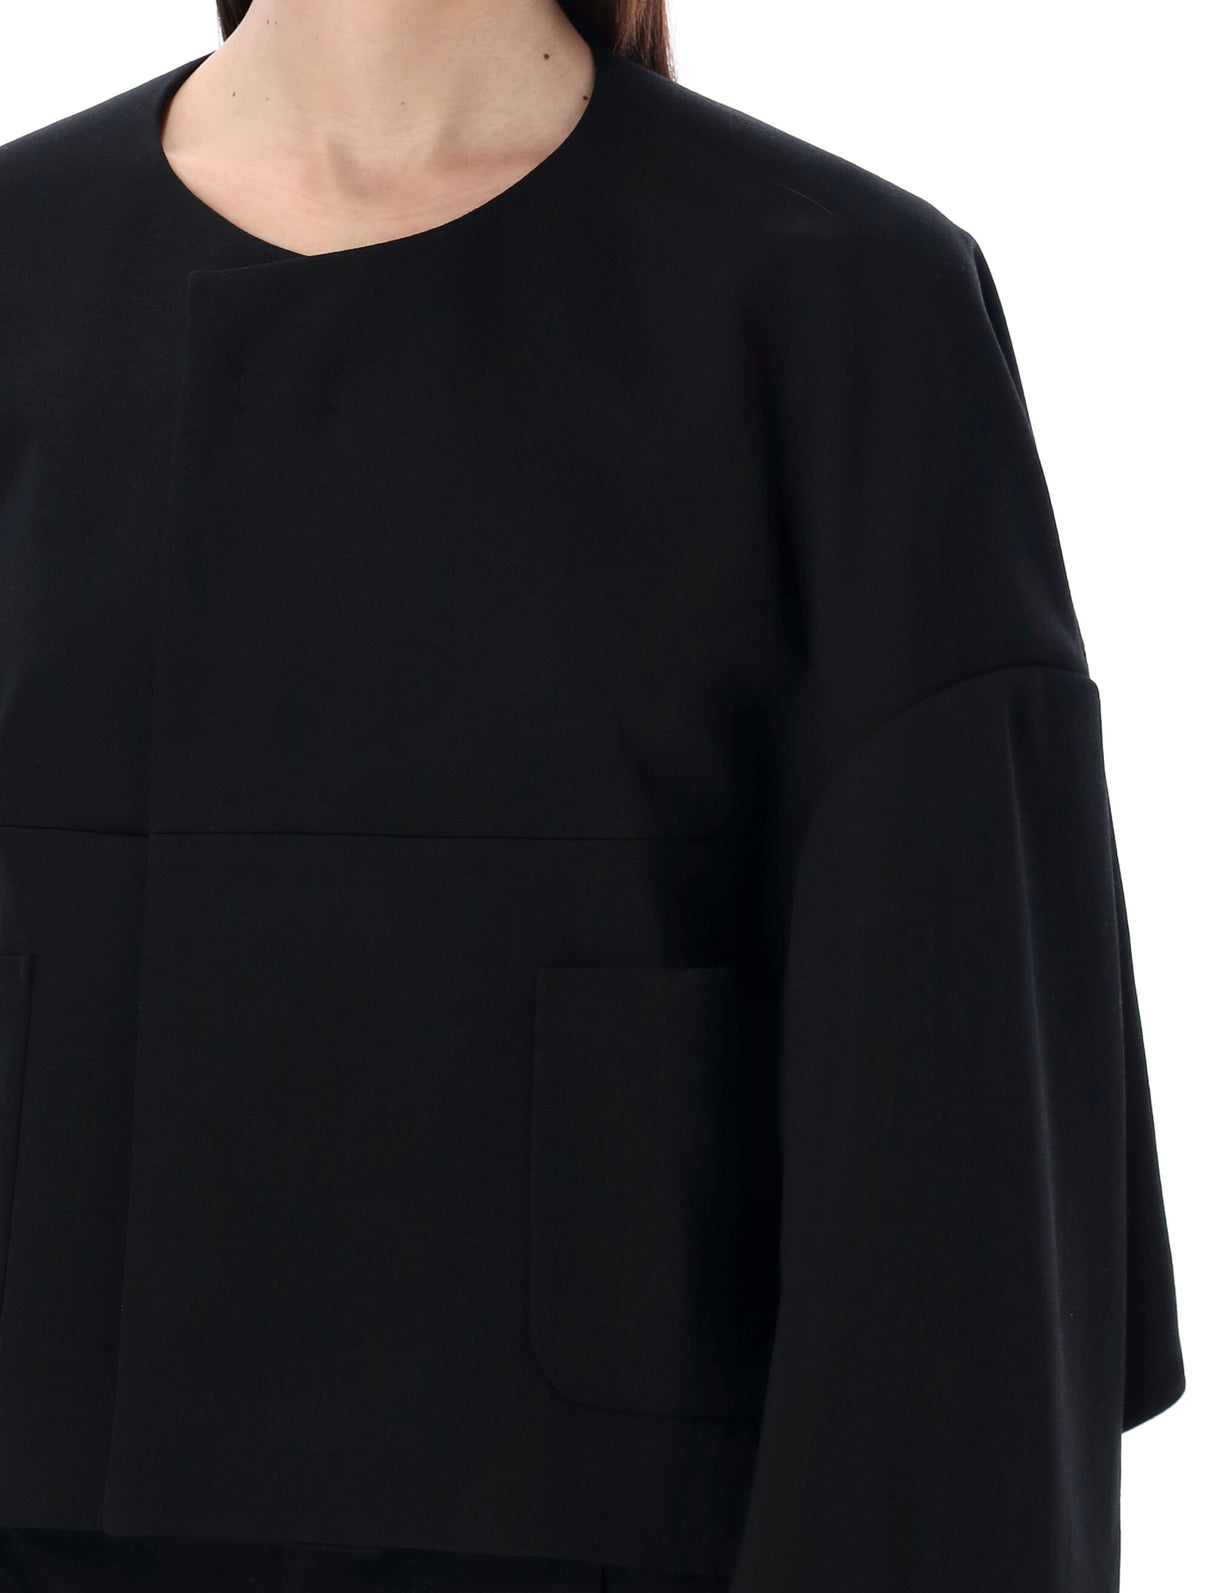 獨特設計的黑色羊毛短外套